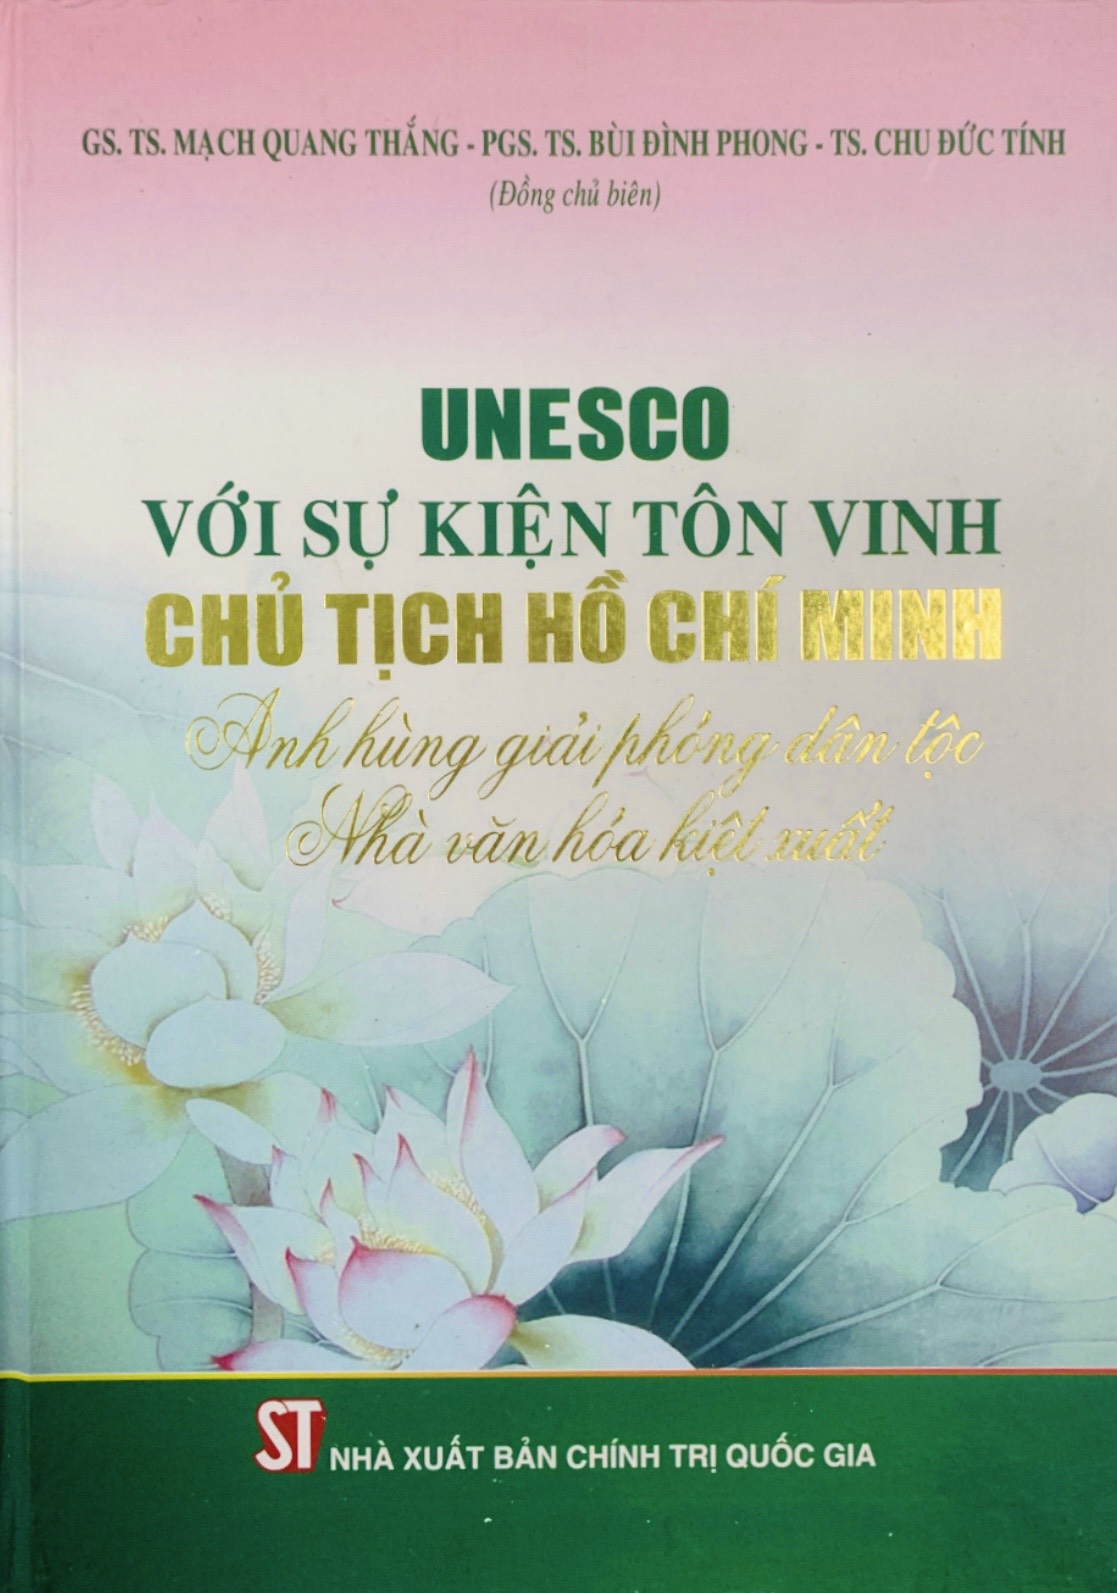 UNESCO với sự kiện tôn vinh Chủ tịch Hồ Chí Minh - Anh hùng giải phóng dân tộc, Nhà văn hóa kiệt xuất  (bản in 2014)